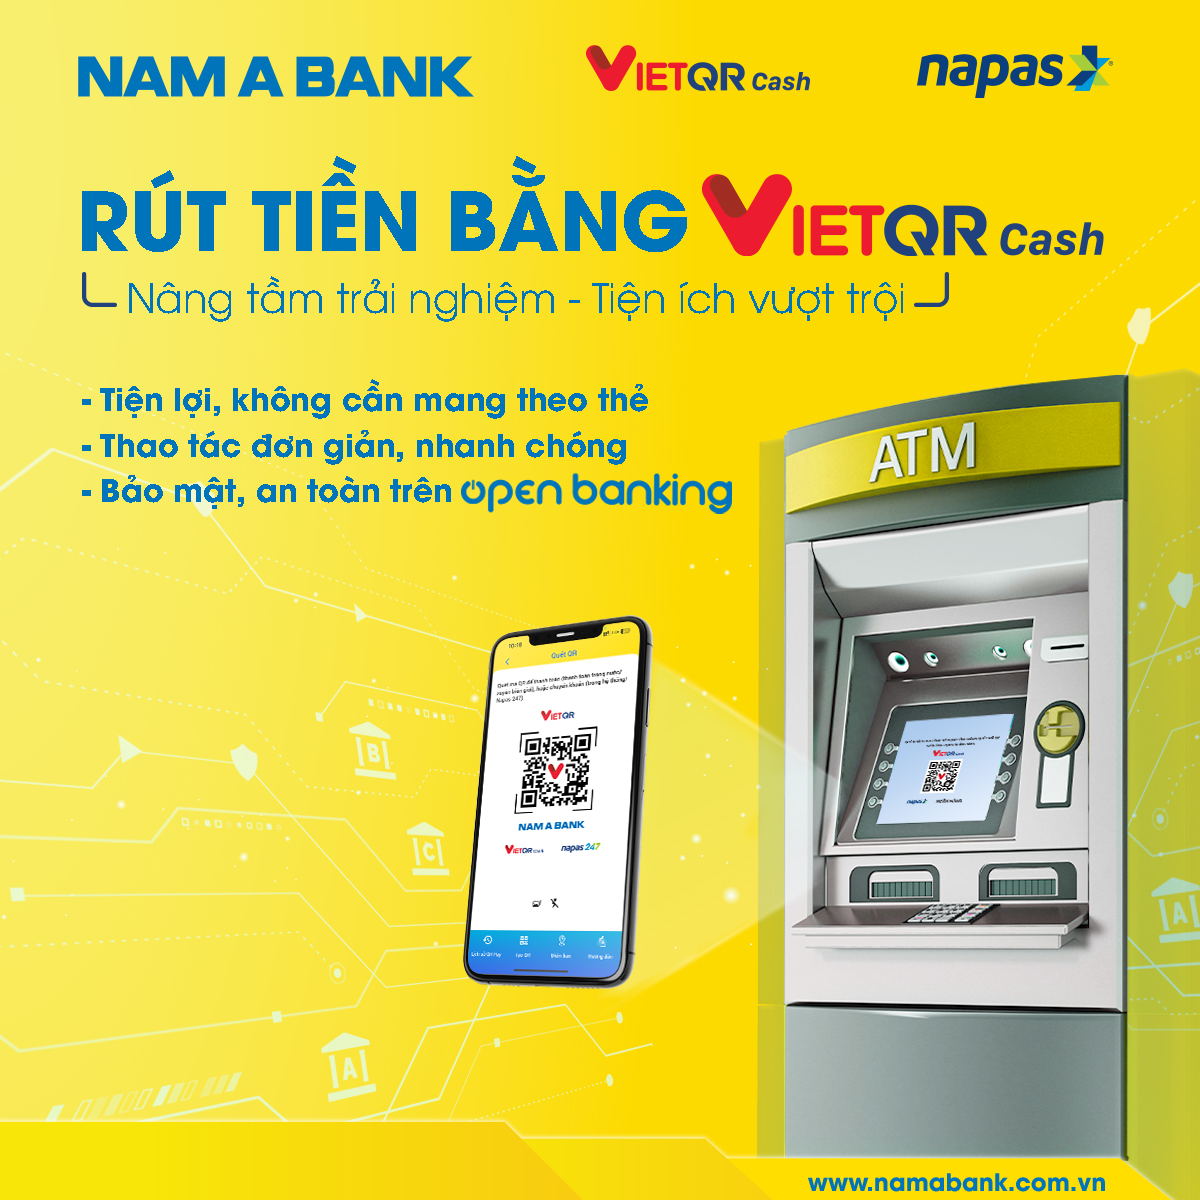 Nam A Bank tiên phong triển khai dịch vụ rút tiền bằng VietQR- Ảnh 2.